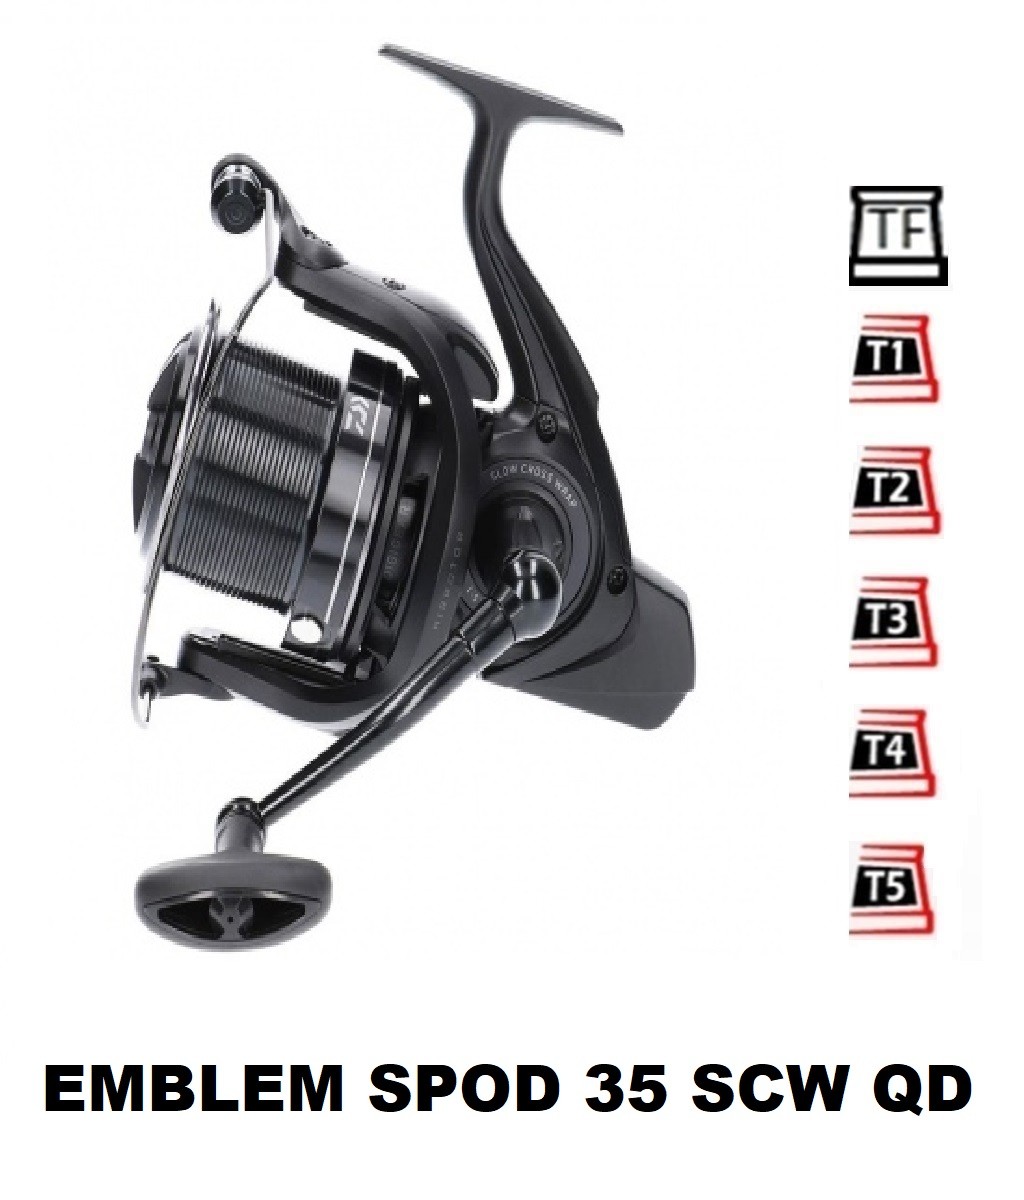 Bobines 19 Emblem Spod 35 SCW QD [2020]